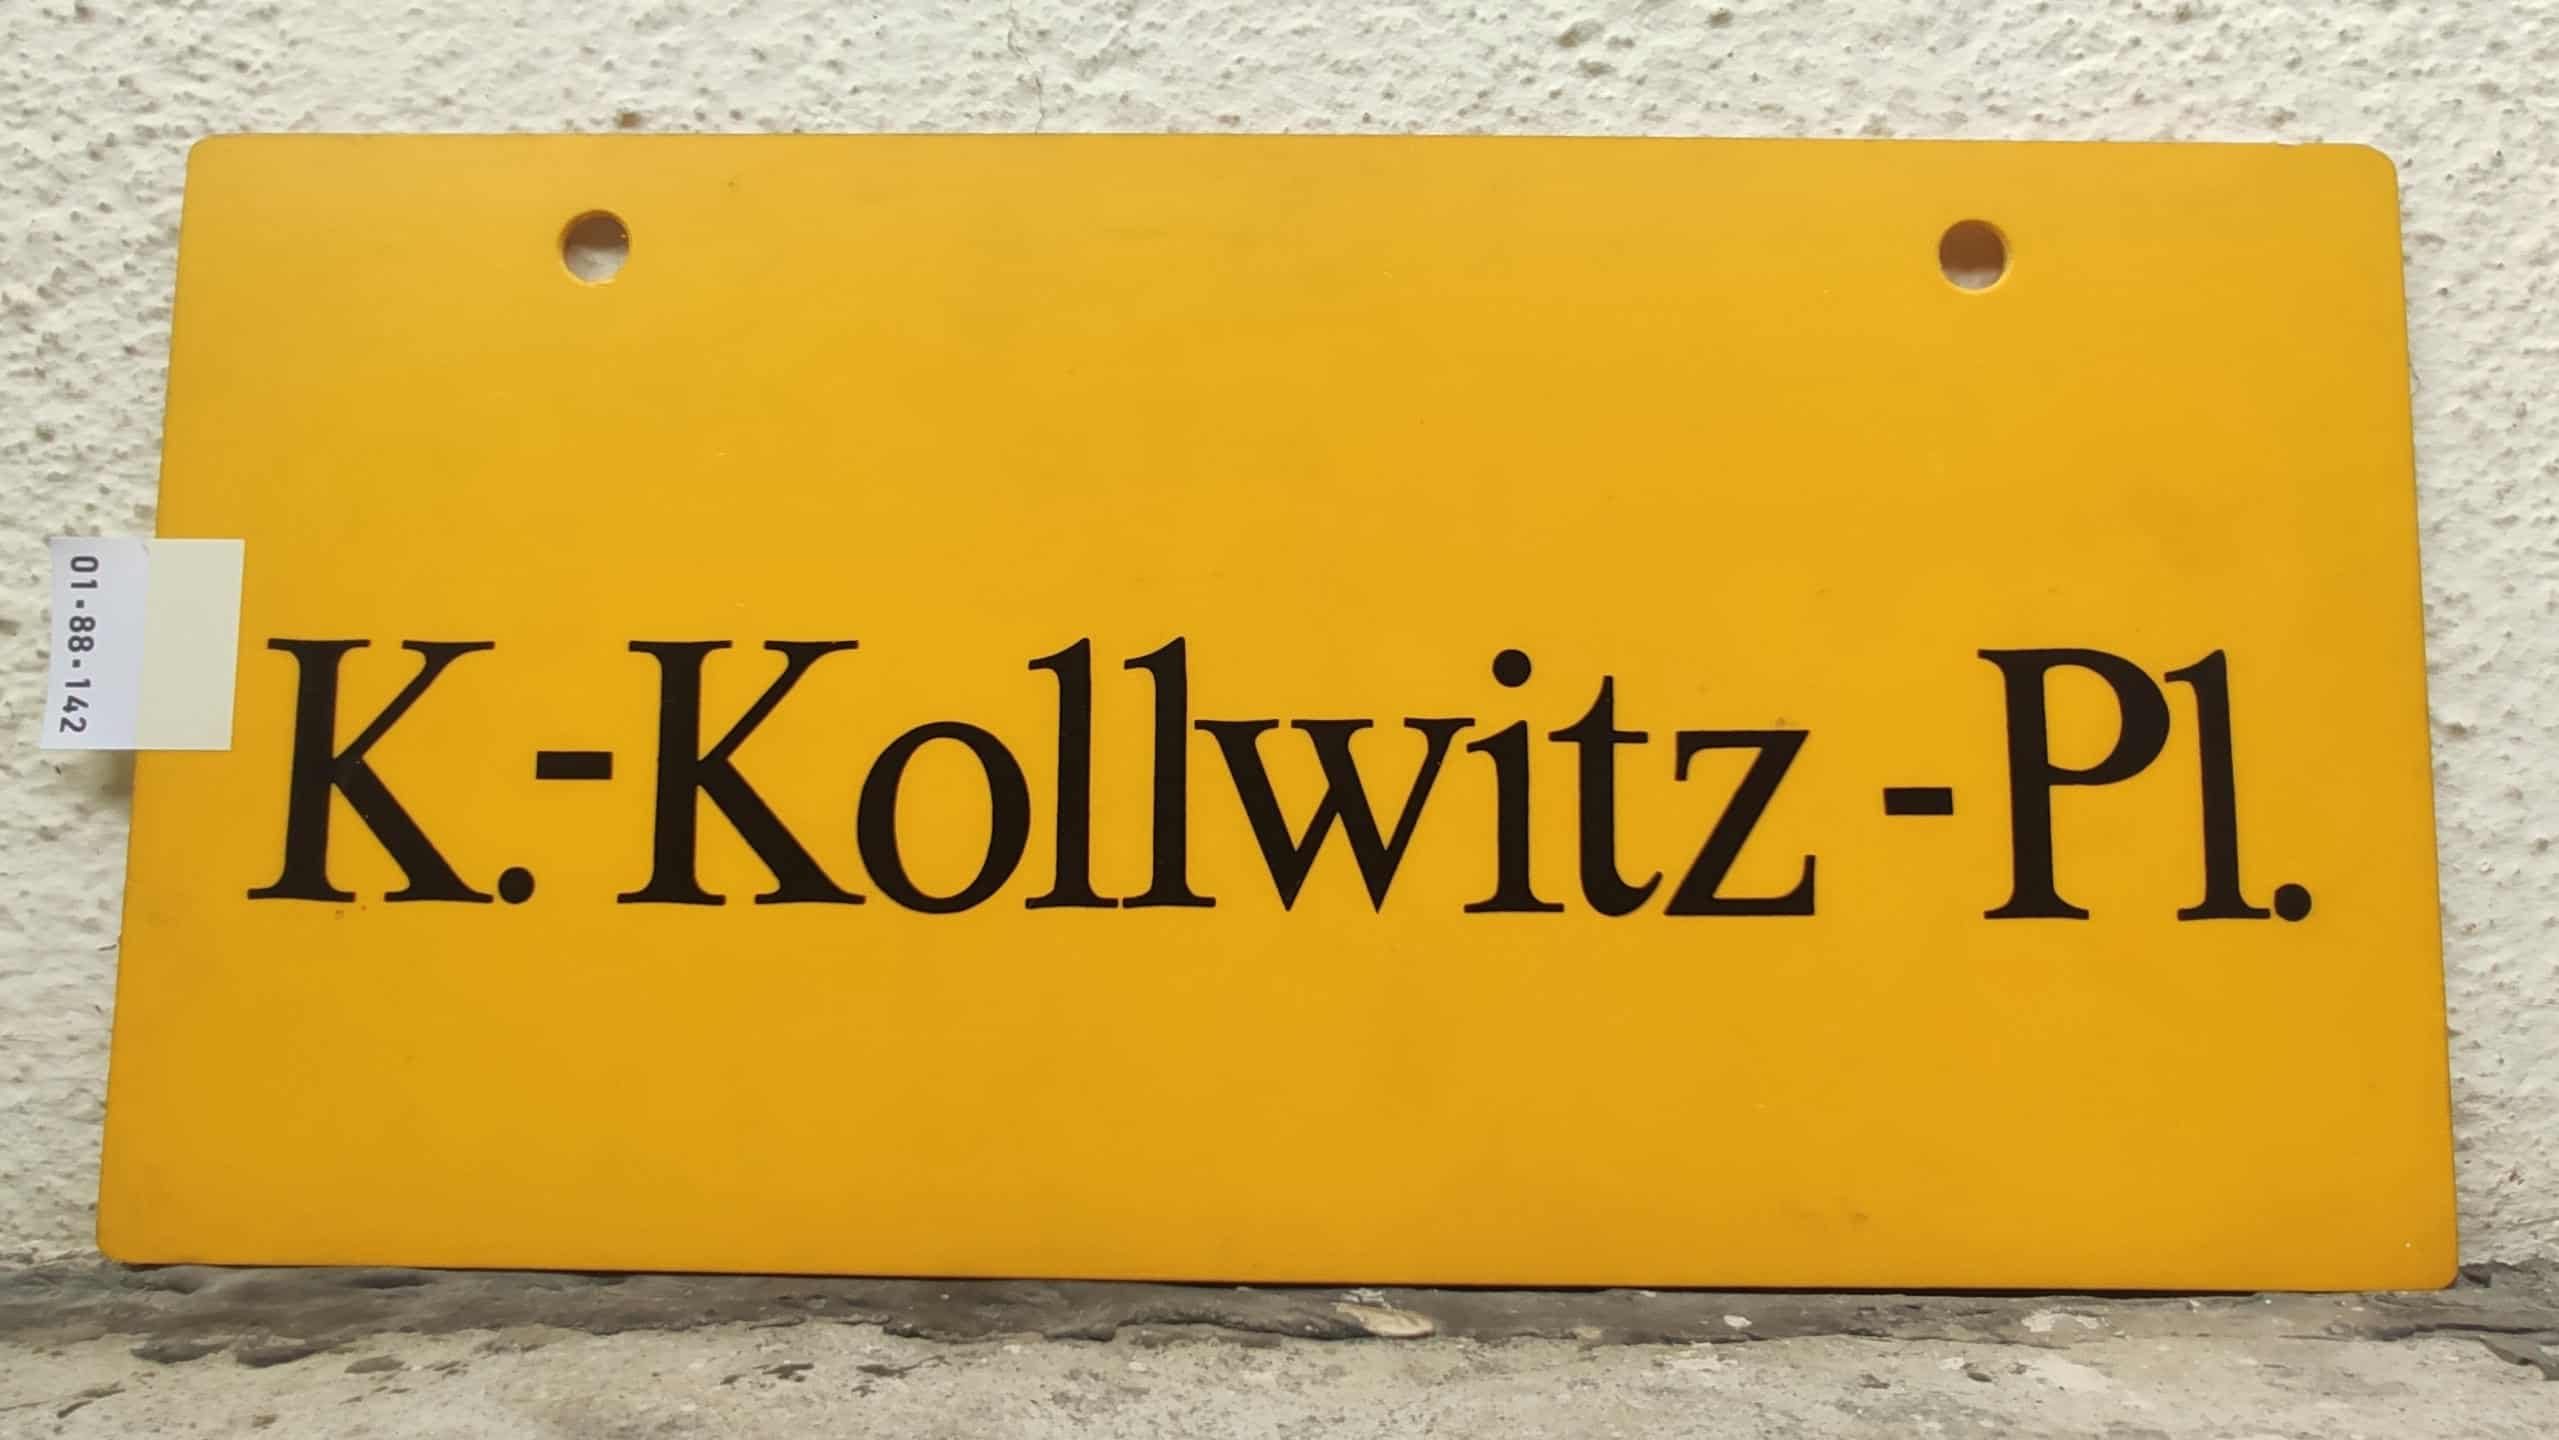 K.-Kollwitz -Pl.